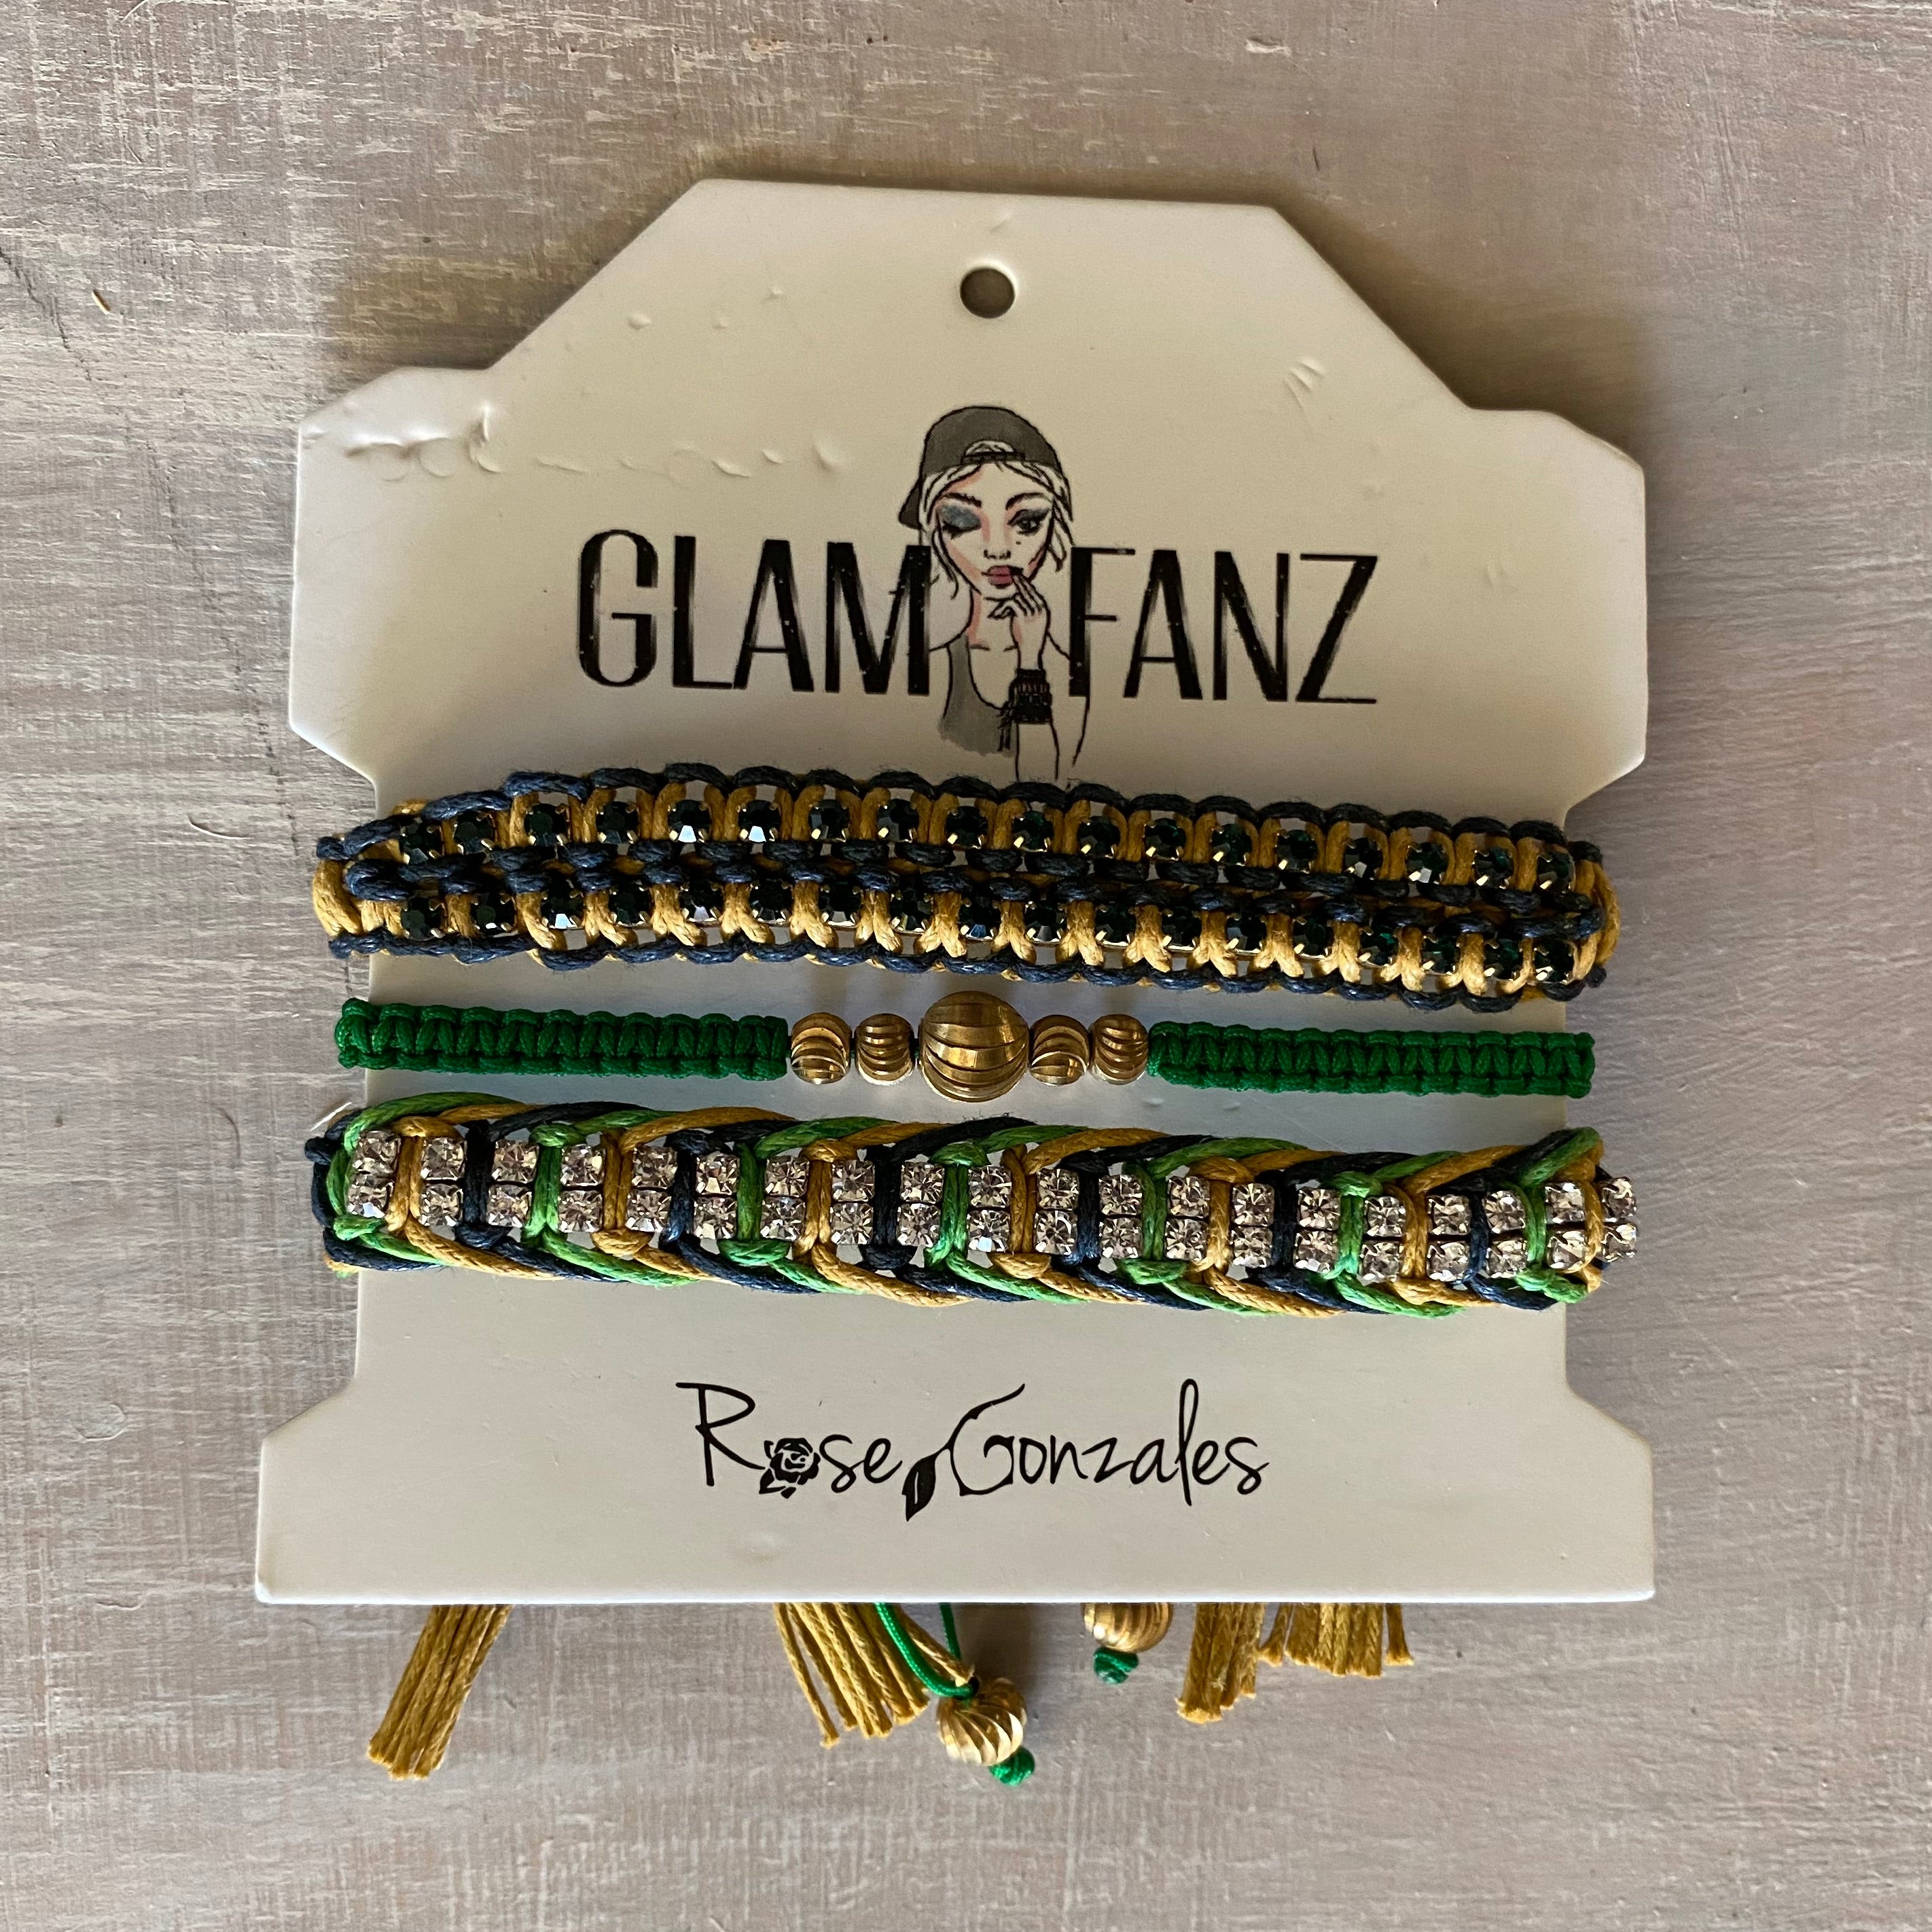 Game Day: Navy Blue, Old Gold & Green - Macrame String Bracelet Set